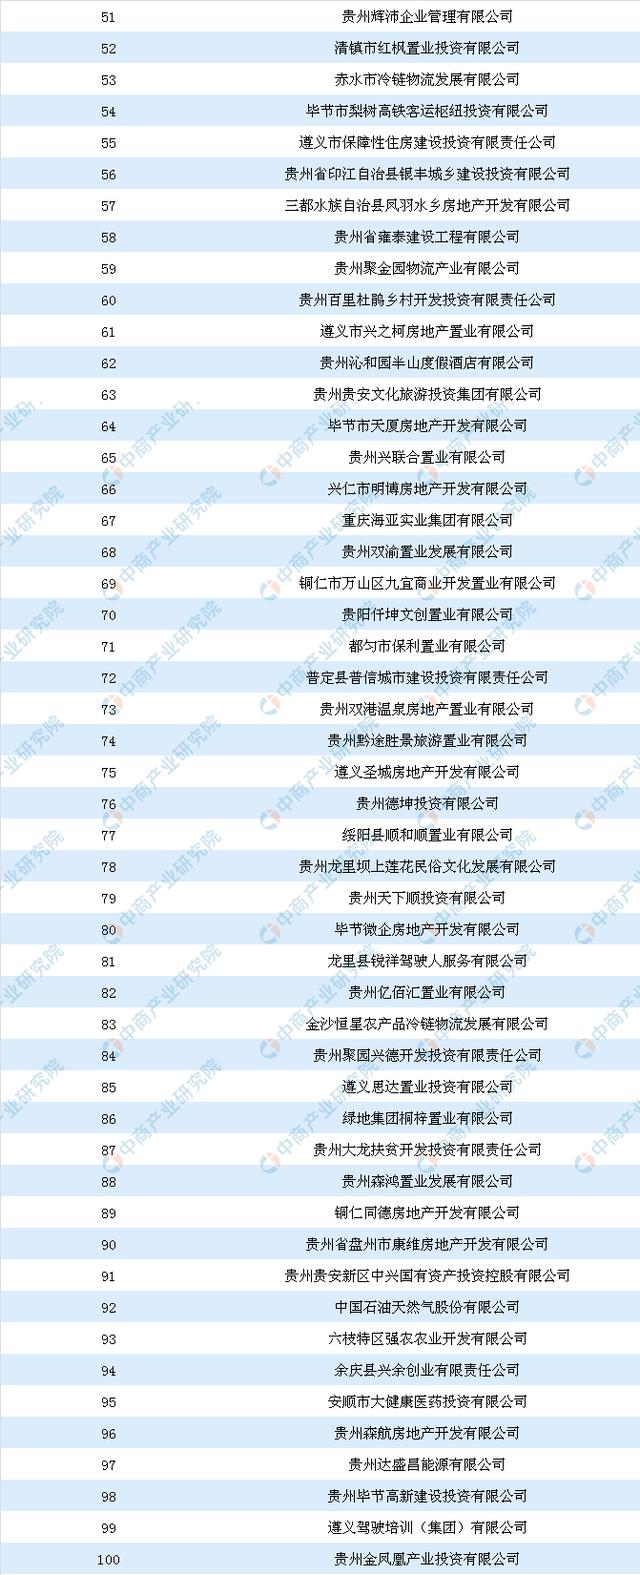 商业地产招商情报:2018年贵州省商服用地面积